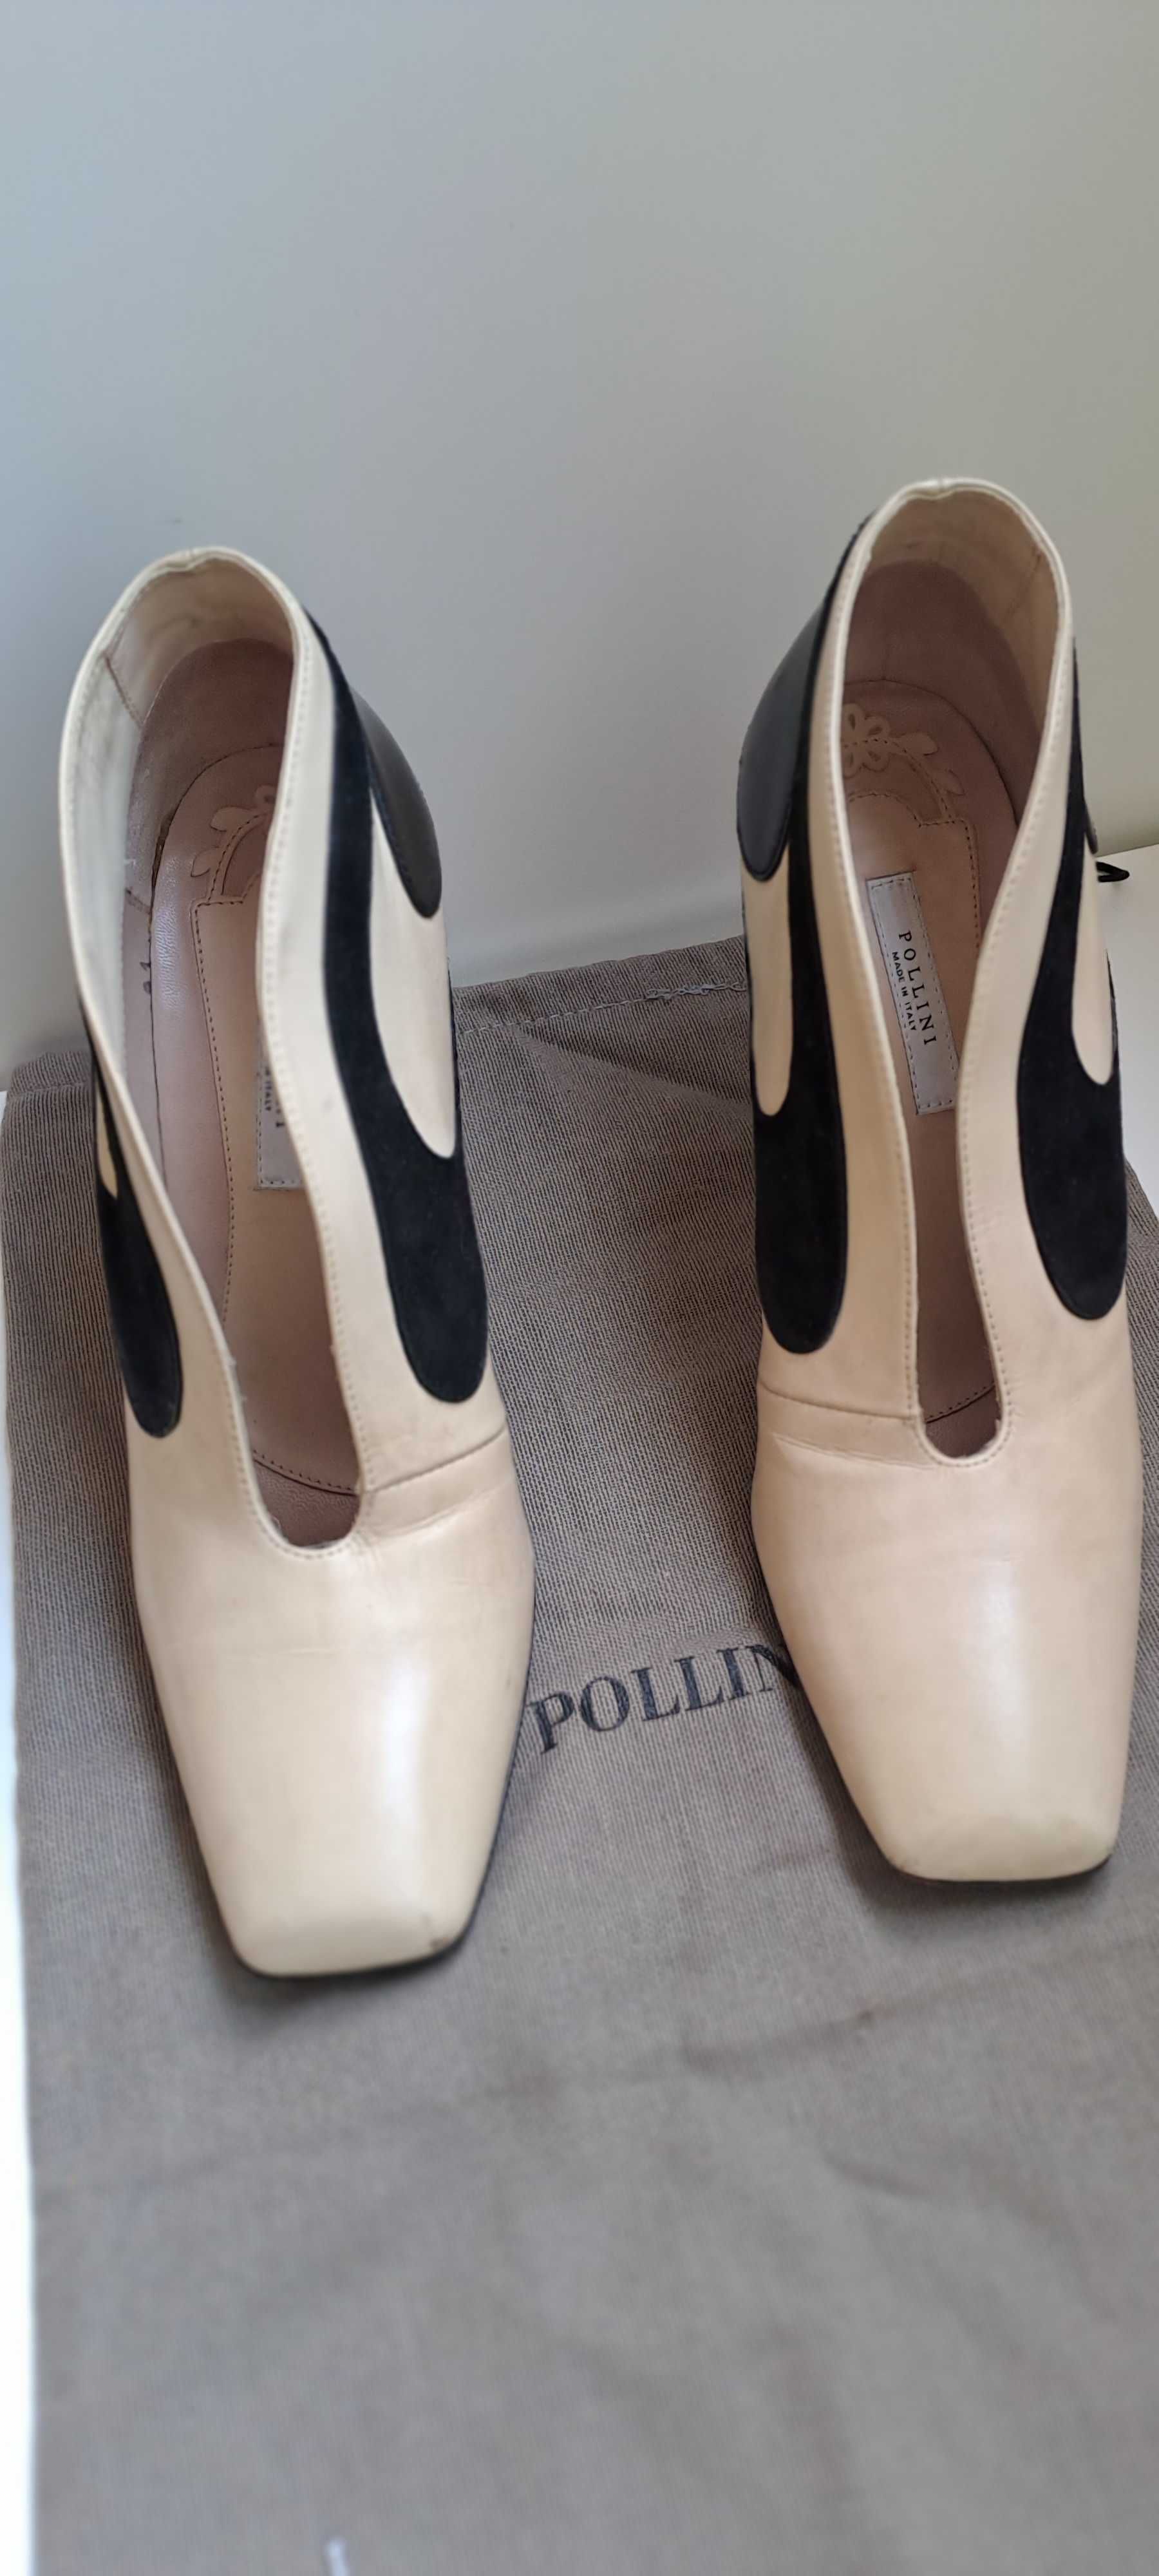 Sapatos italianos de salto alto Pollini